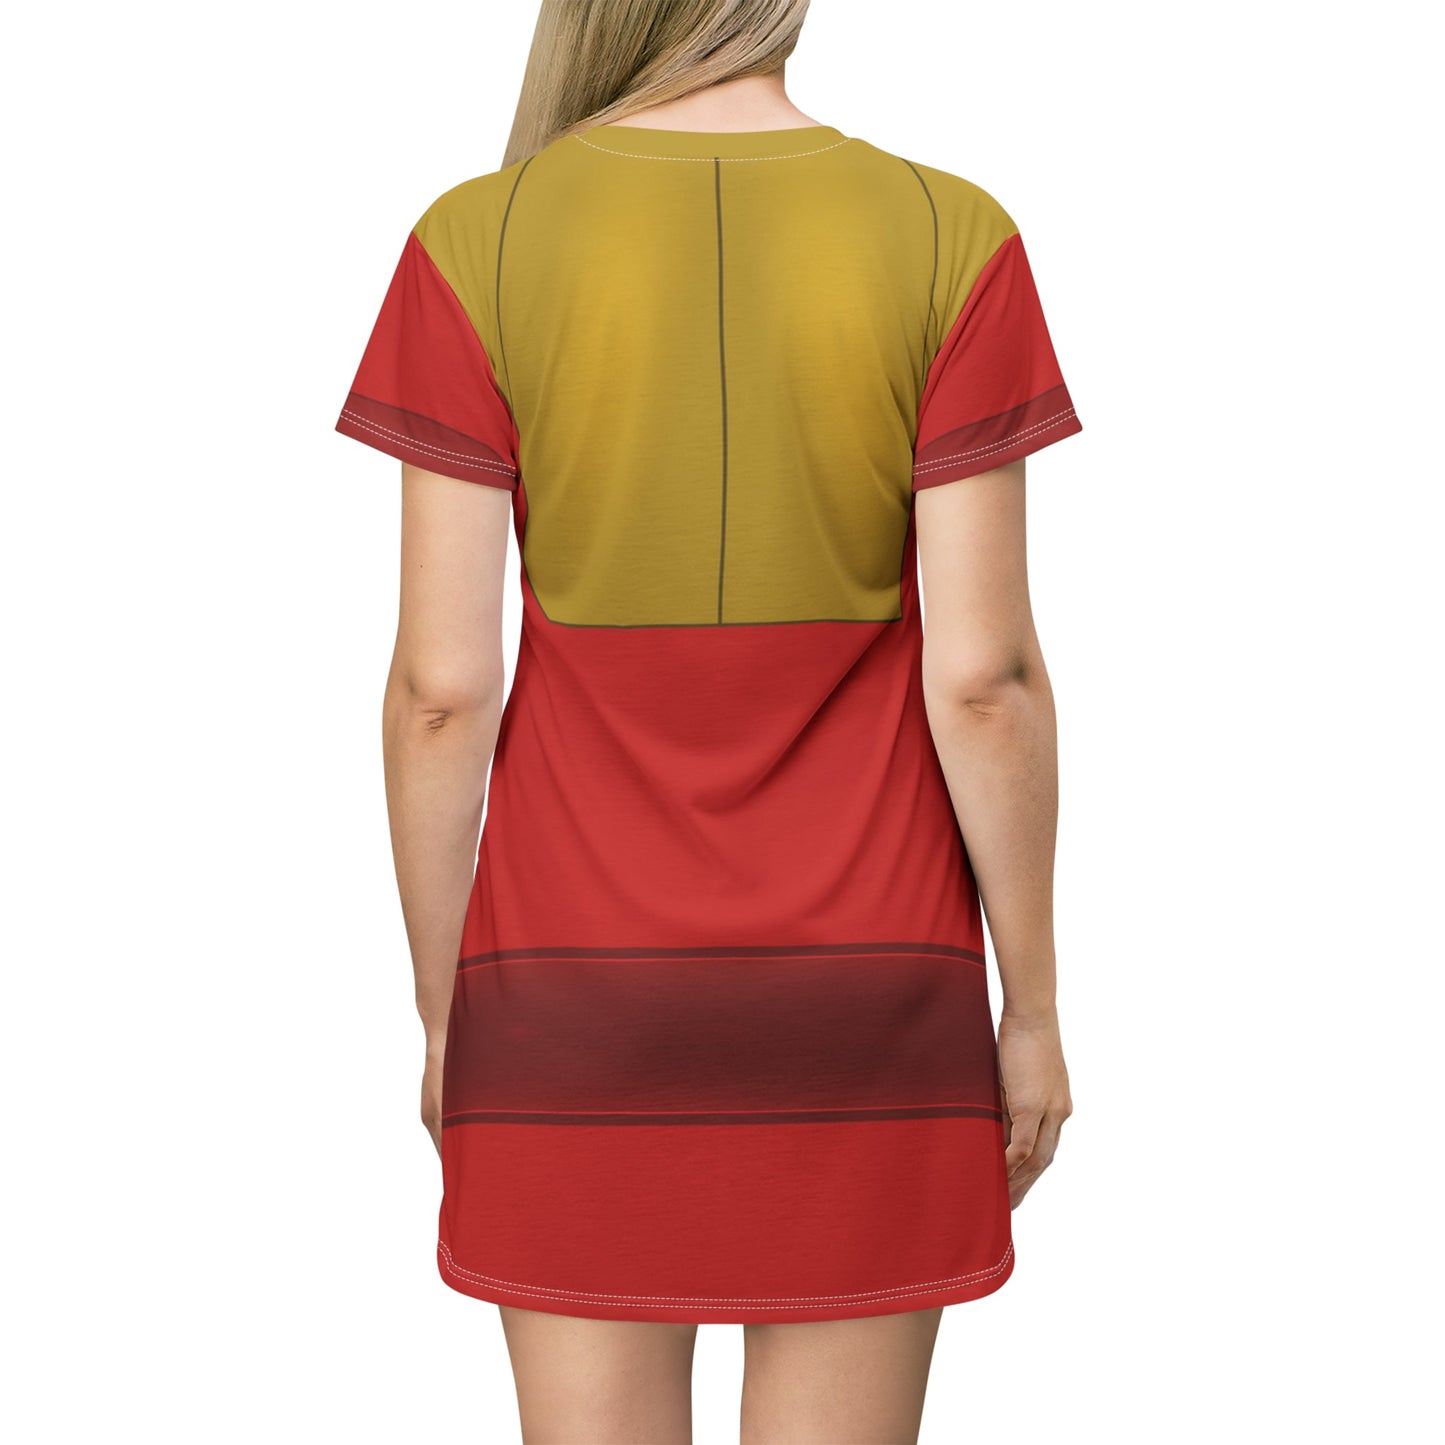 The Kuzco T-Shirt Dress- Cosplay, Bounding adult disneyAll Over PrintAOP#tag4##tag5##tag6#